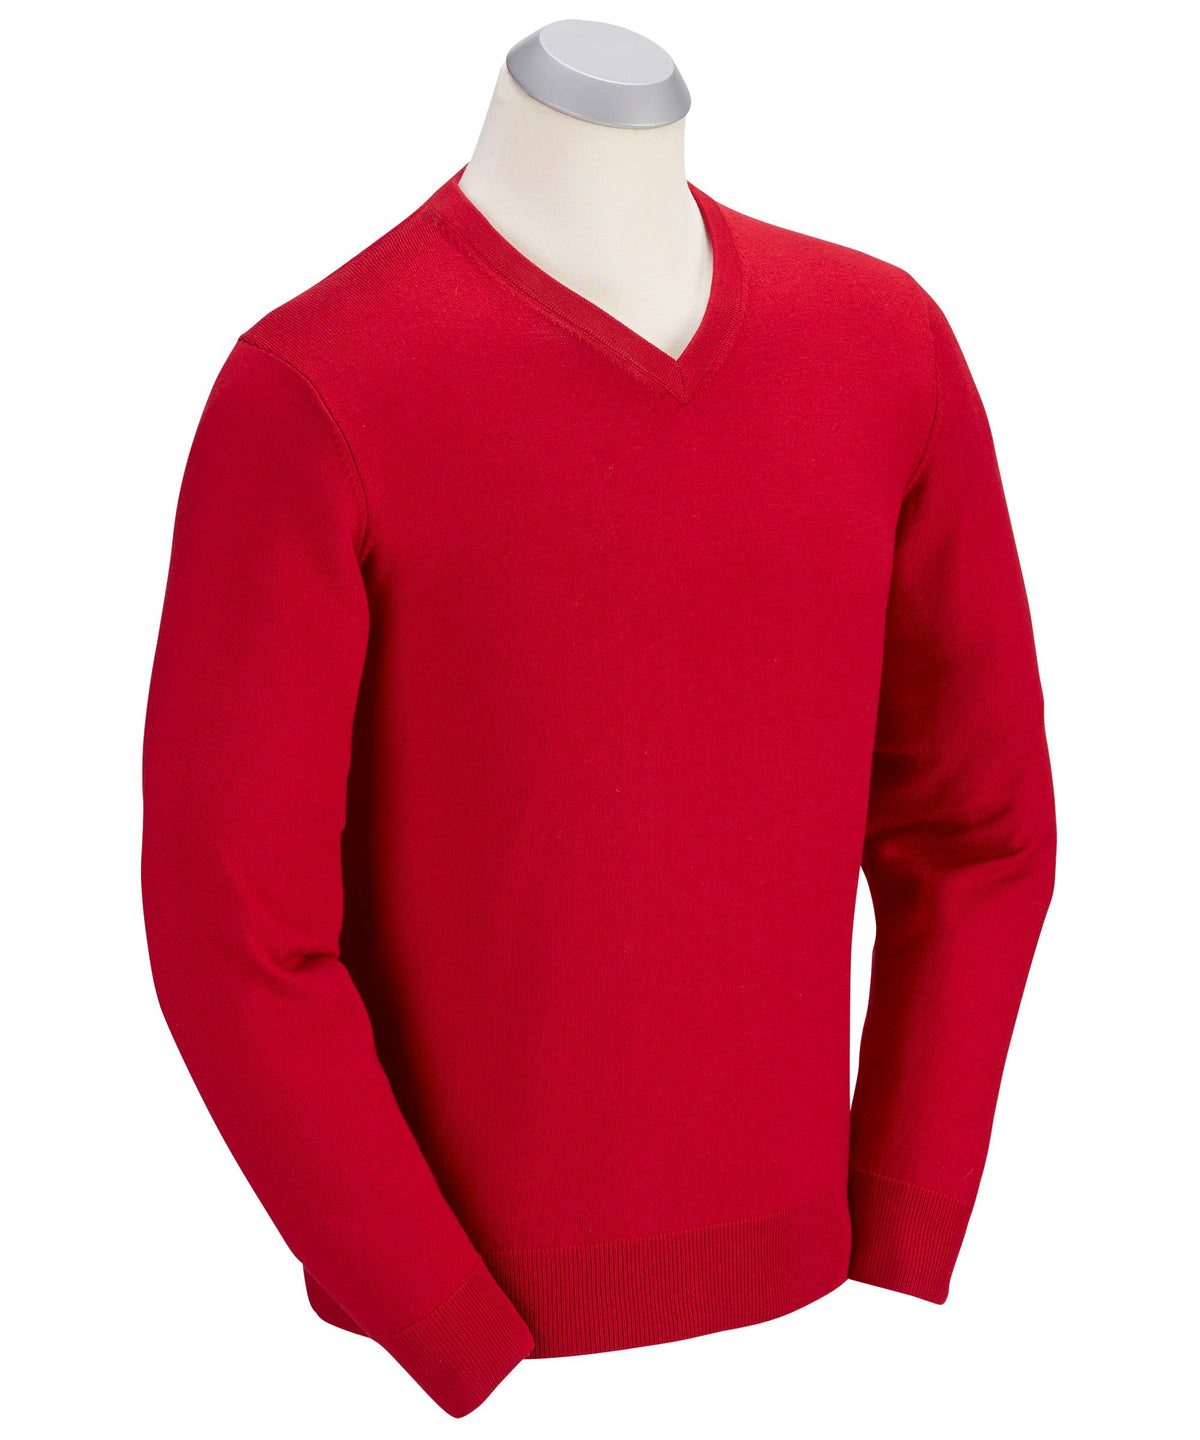 100% Merino Wool V-Neck Sweater